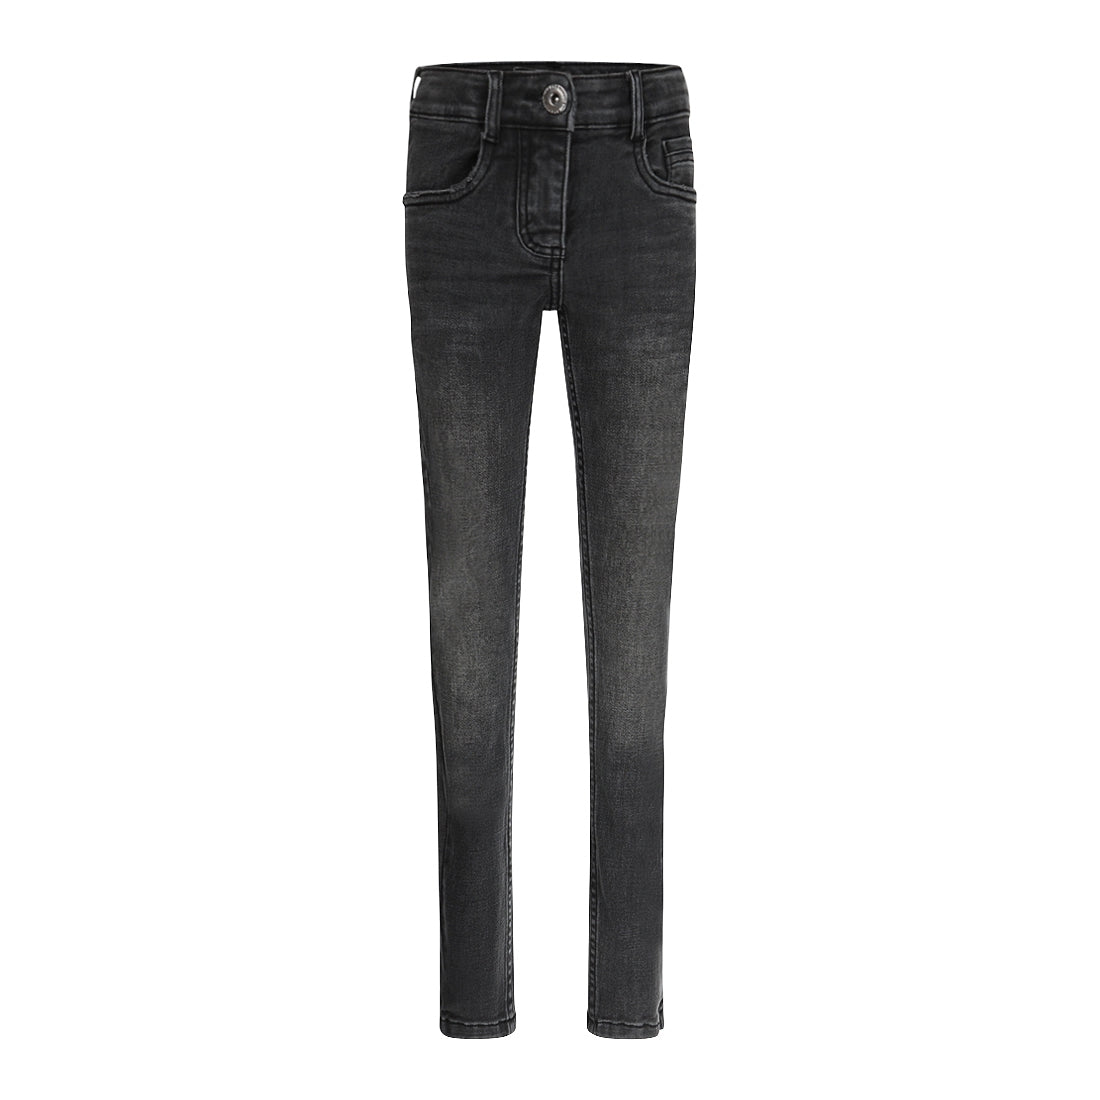 Jongens Jeans Skinny van No Way Monday in de kleur Black jeans in maat 164.